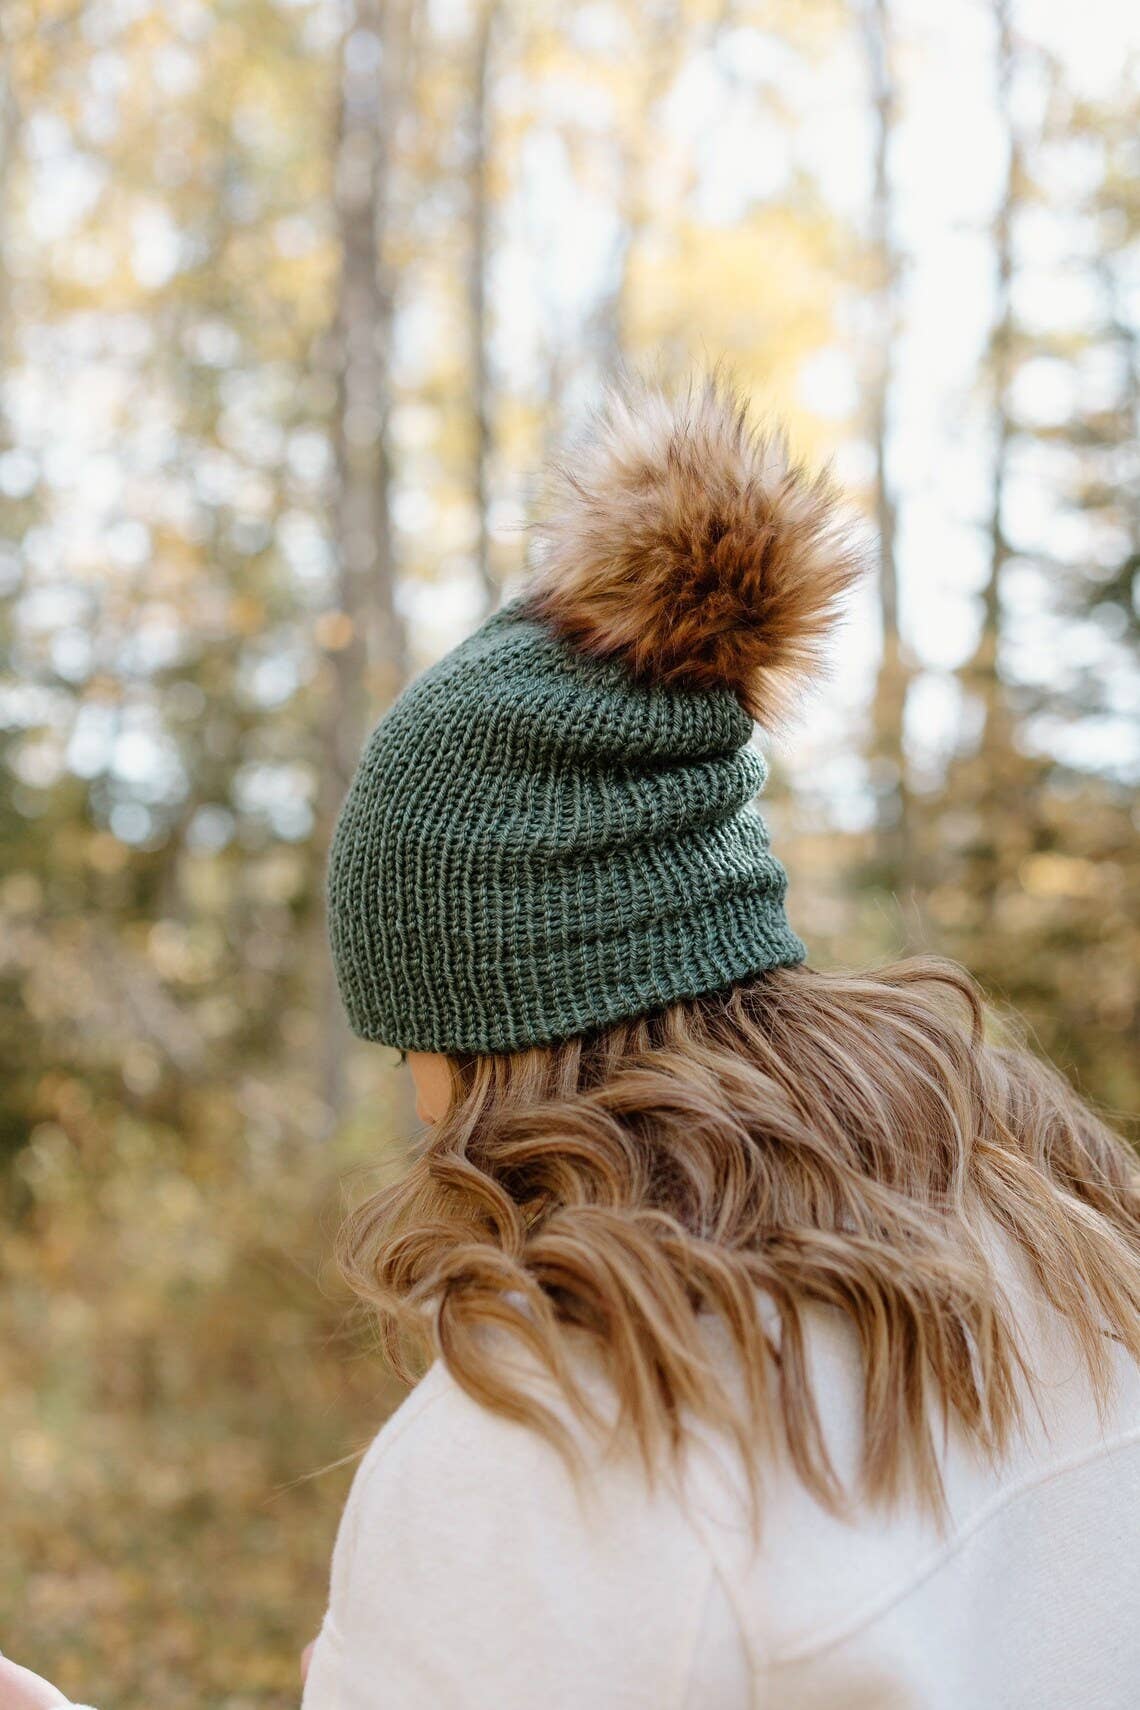 Rocky Mountain Green Knit Beanie Toque with Fur Pom Pom - My Filosophy